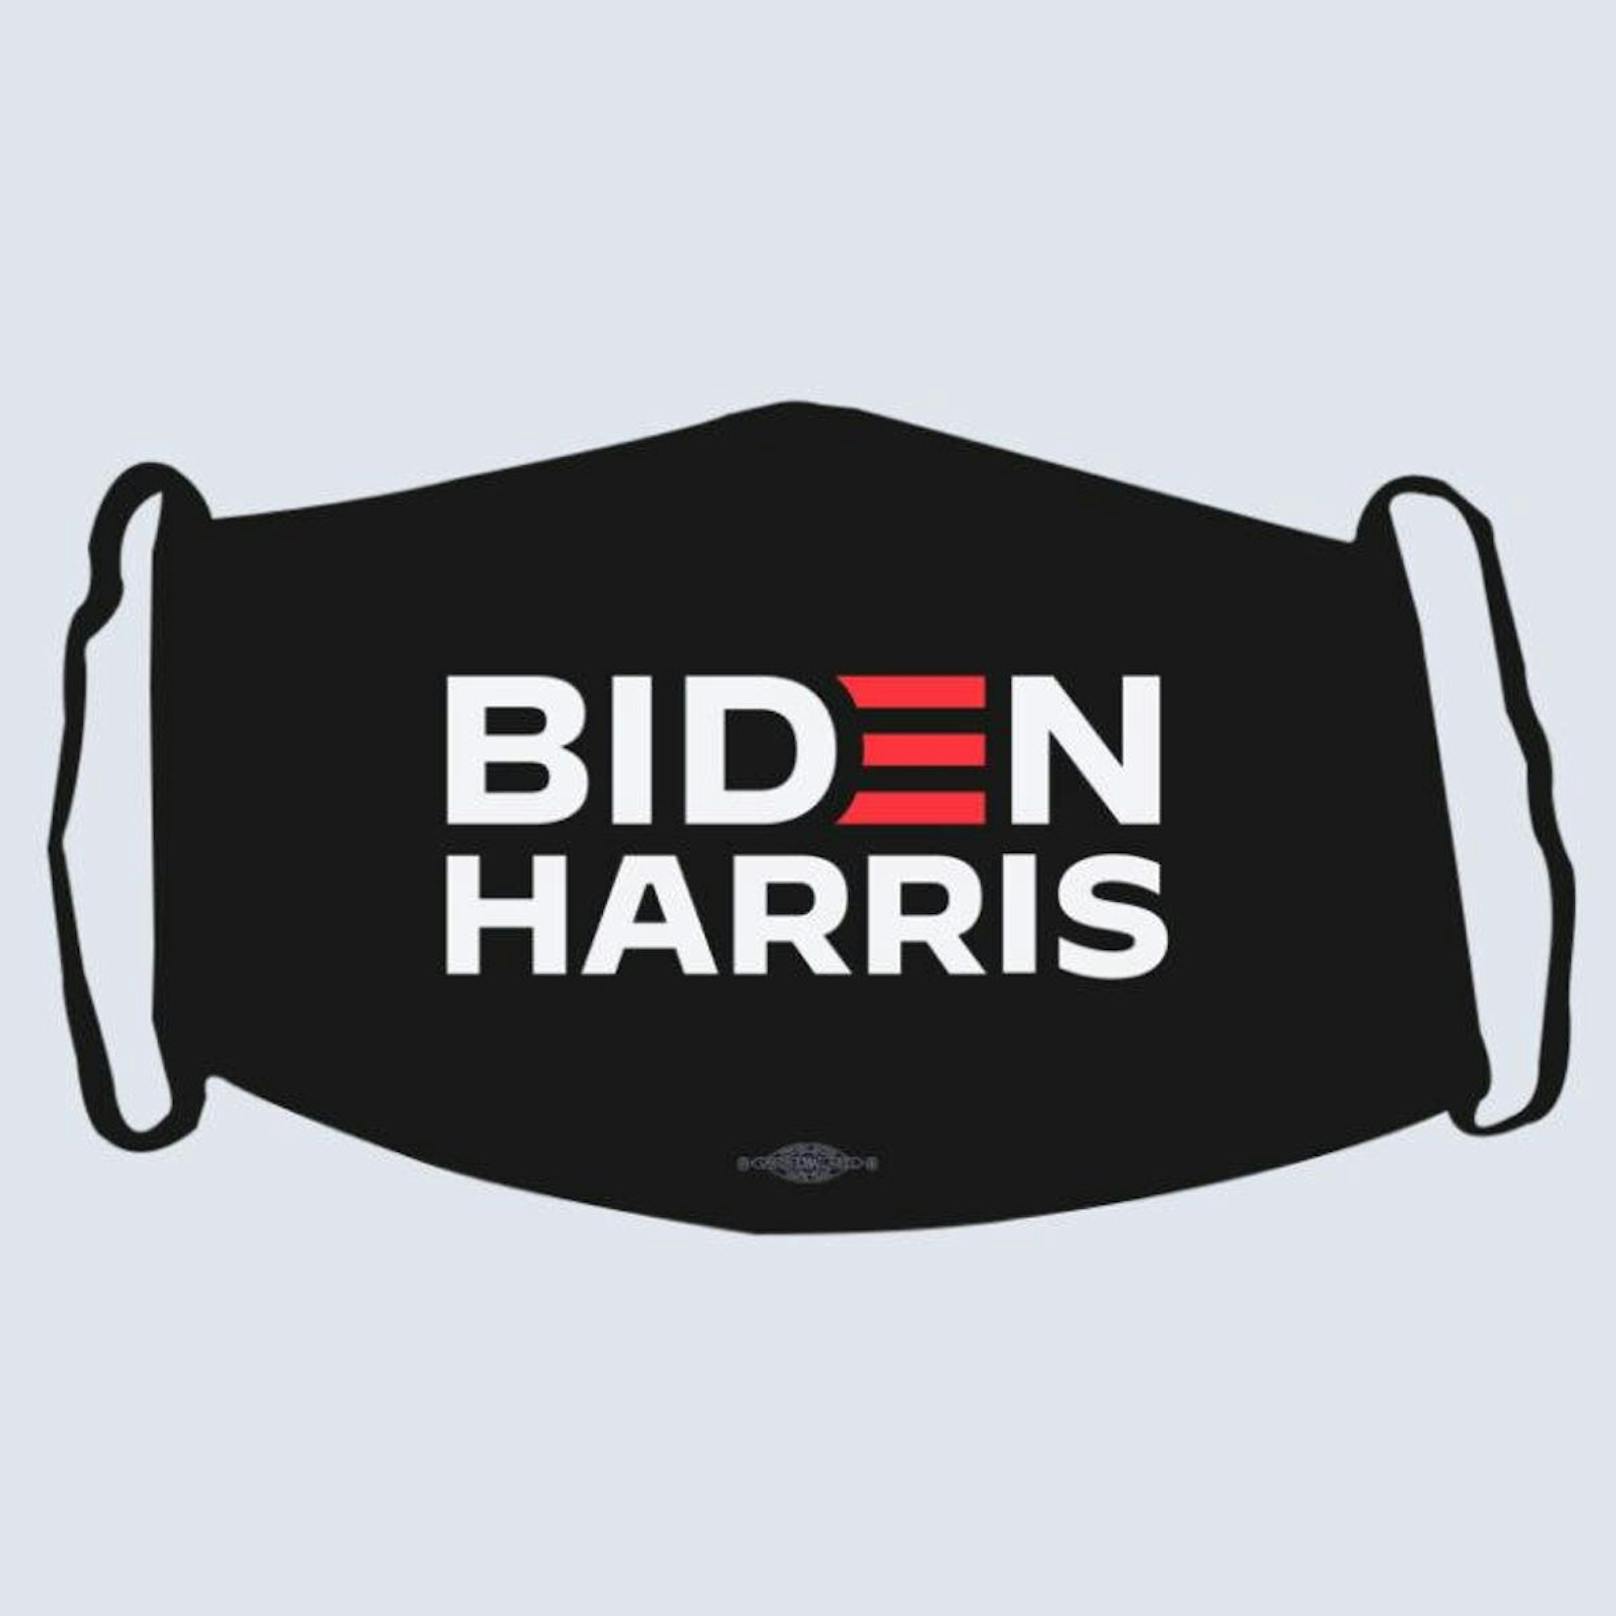 Biden verkauft im Rahmen seines Wahlkampfs selbst auch Masken.